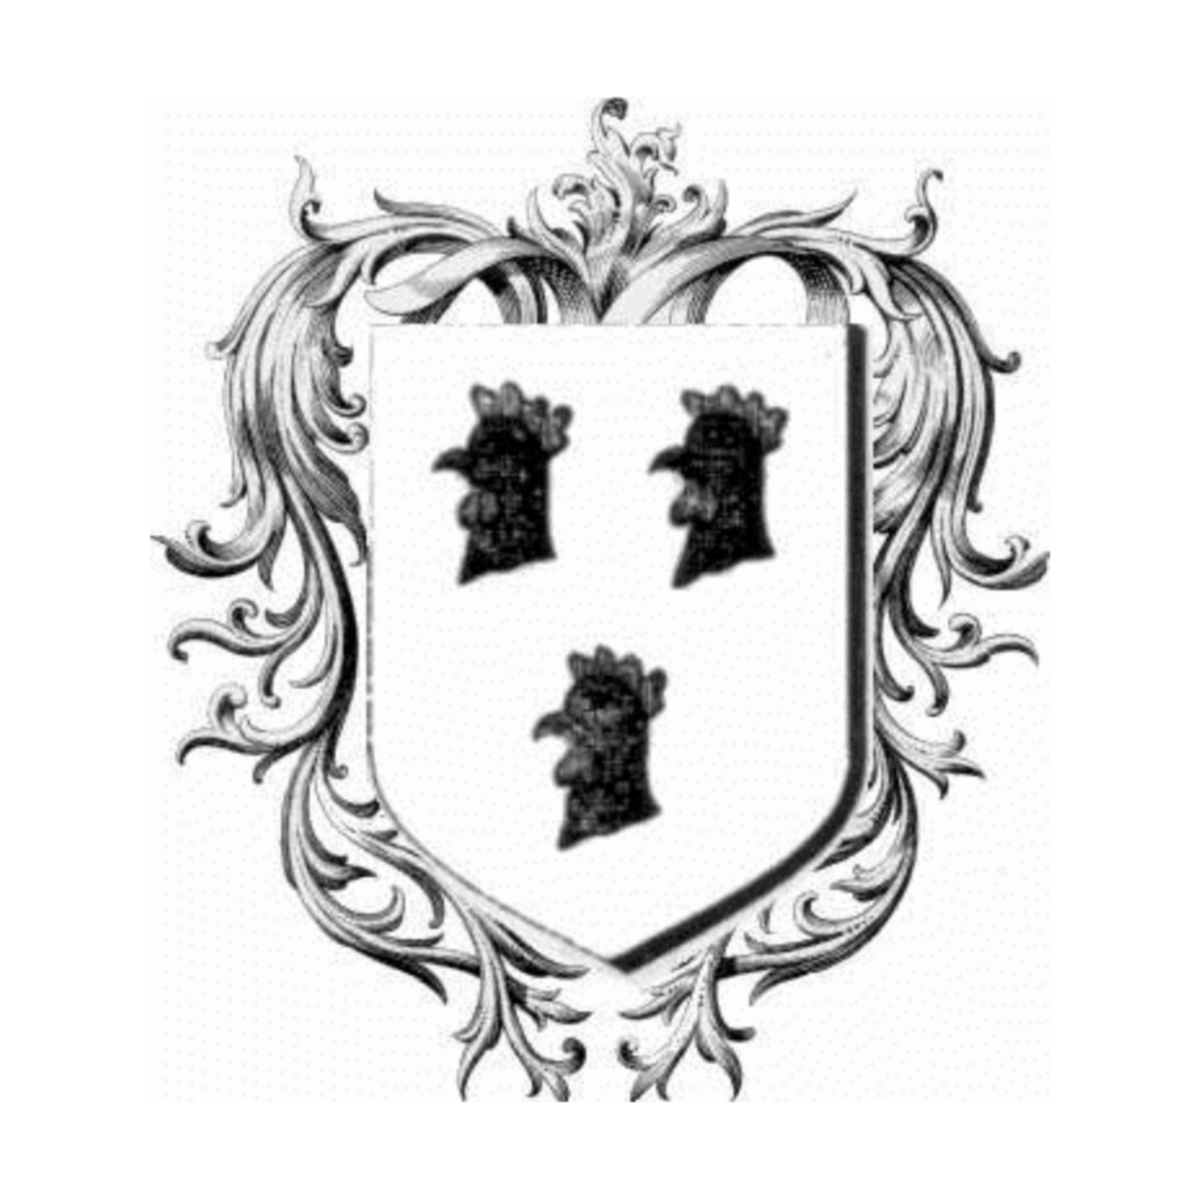 Wappen der FamilieFrost